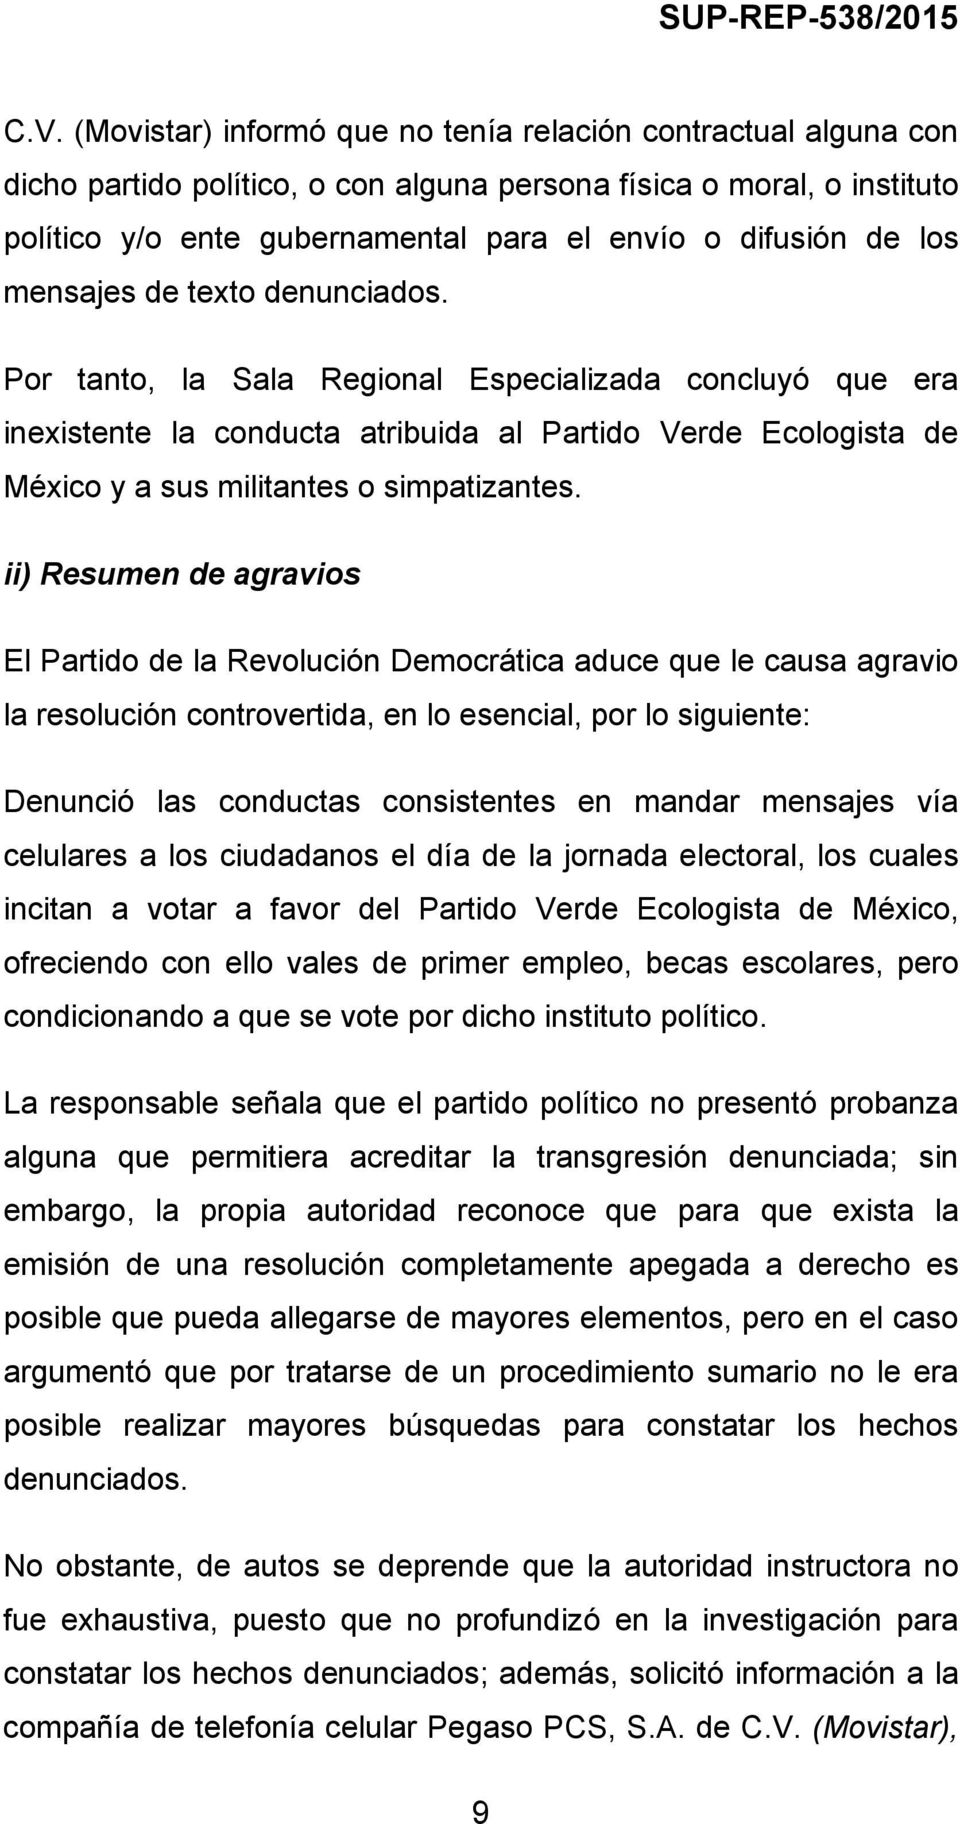 Por tanto, la Sala Regional Especializada concluyó que era inexistente la conducta atribuida al Partido Verde Ecologista de México y a sus militantes o simpatizantes.